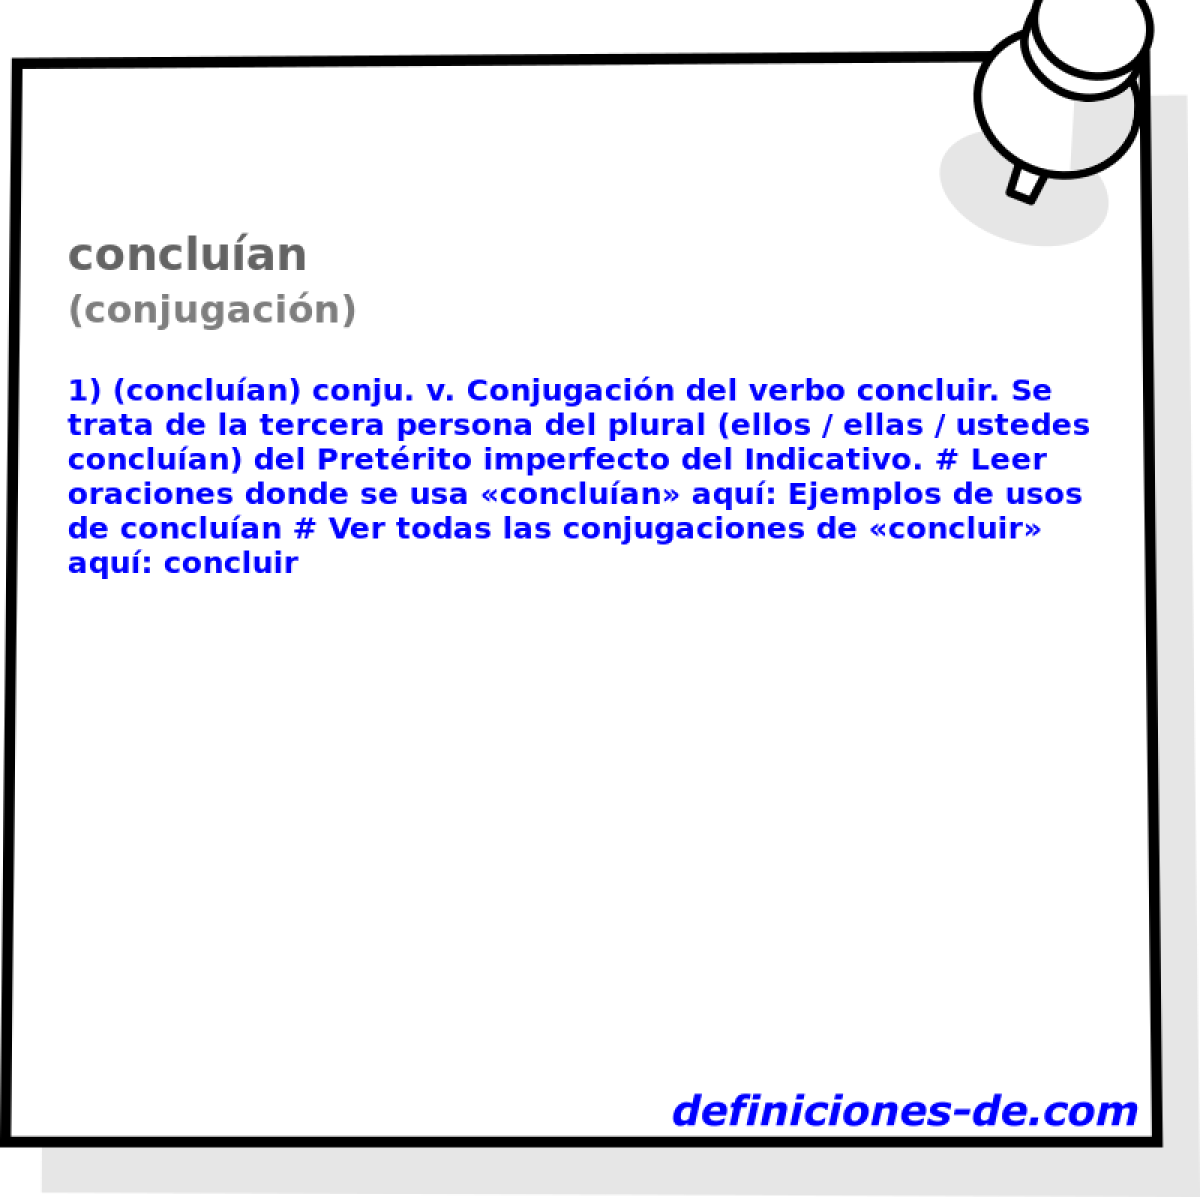 concluan (conjugacin)